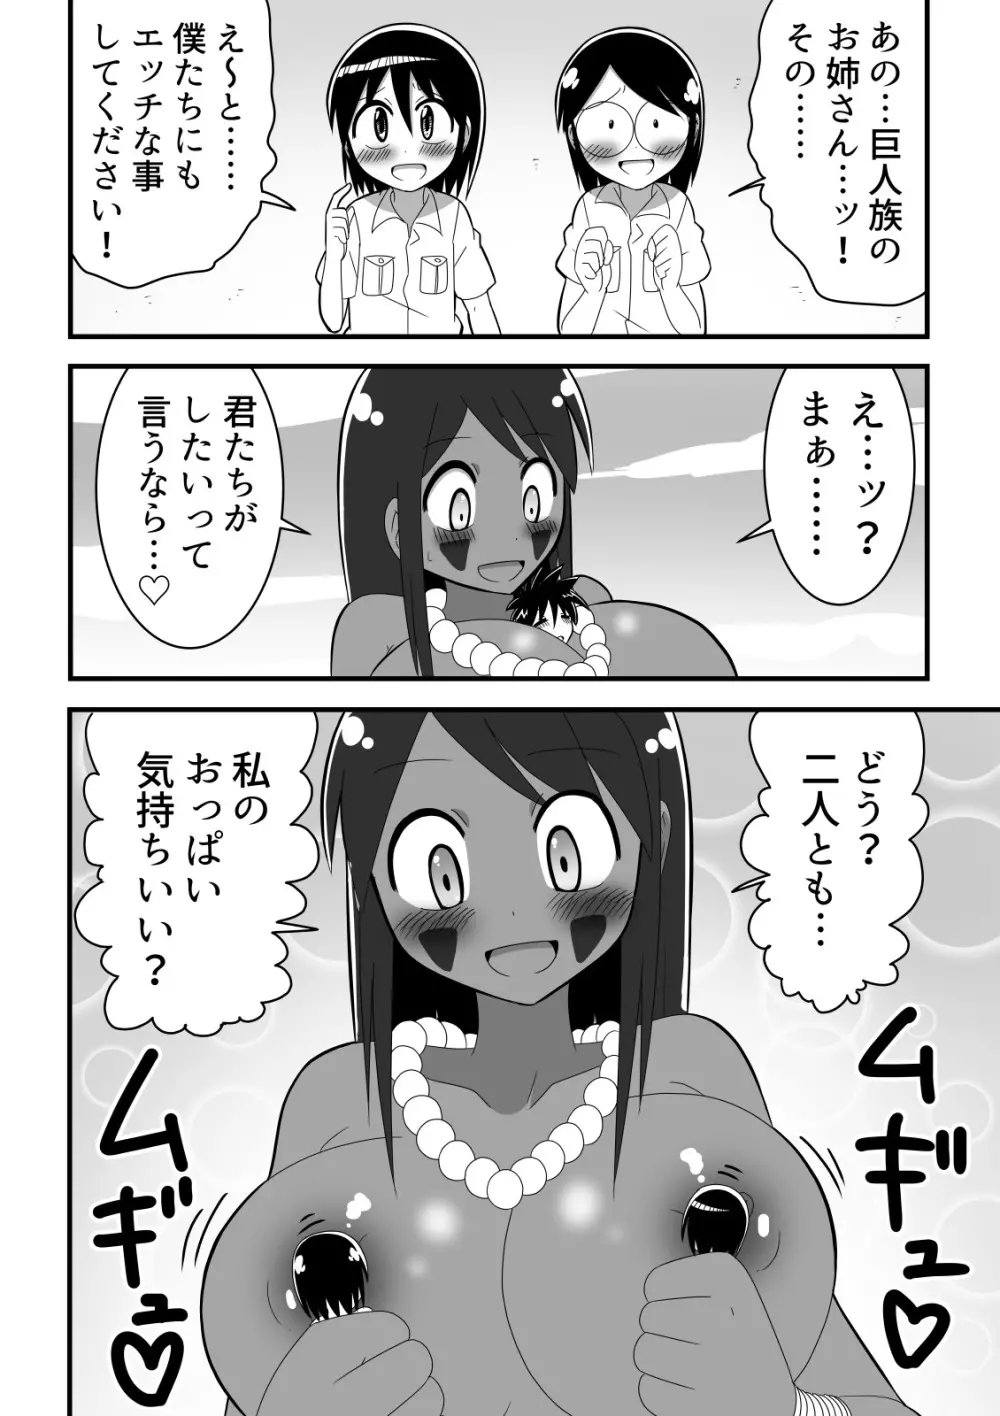 人外おねショタ漫画詰め合わせ集Vol.１ 12ページ